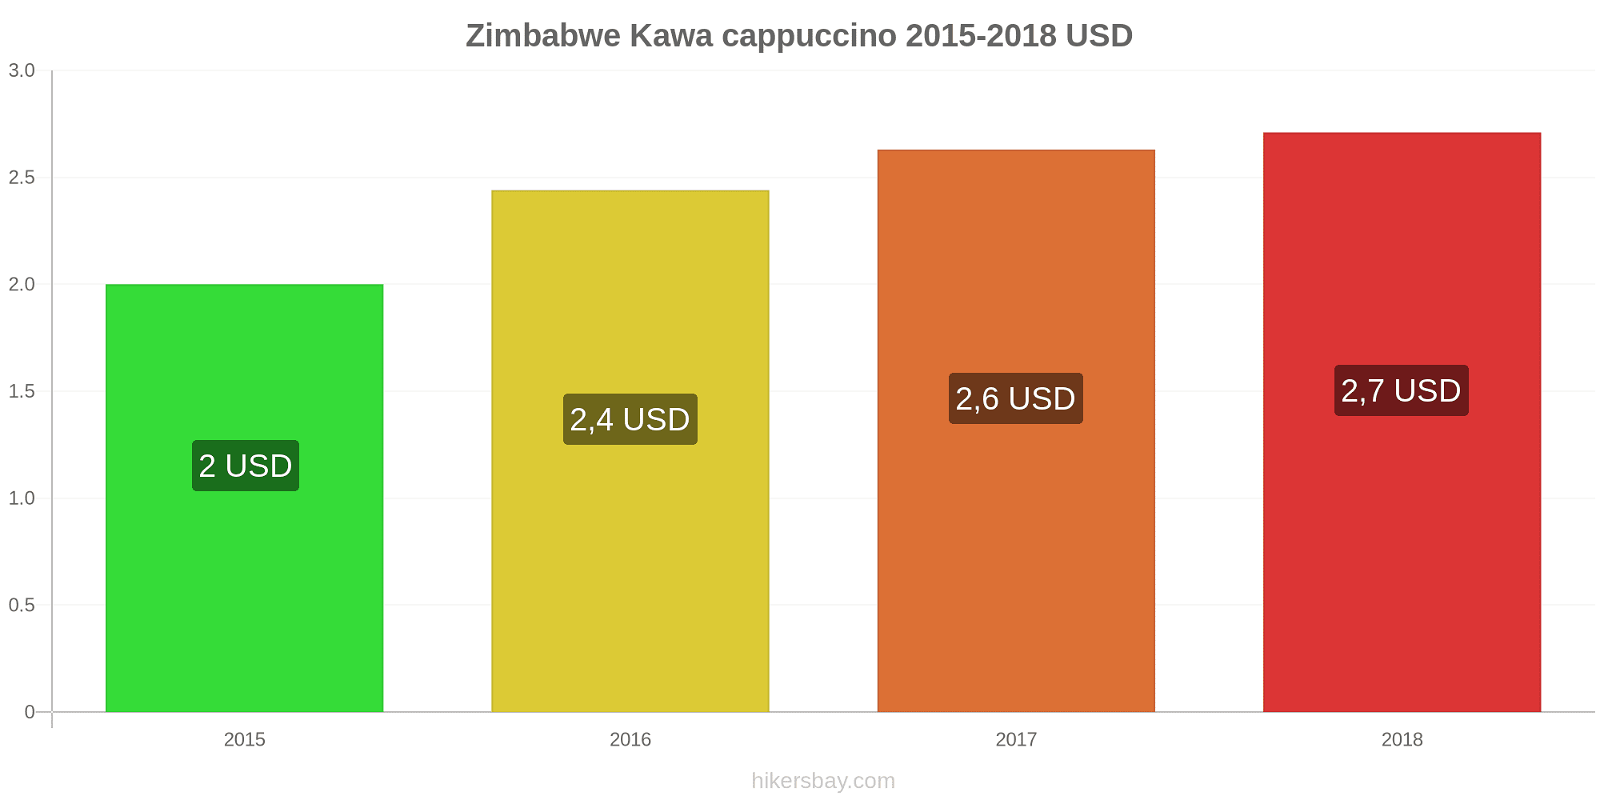 Zimbabwe zmiany cen Kawa cappuccino hikersbay.com